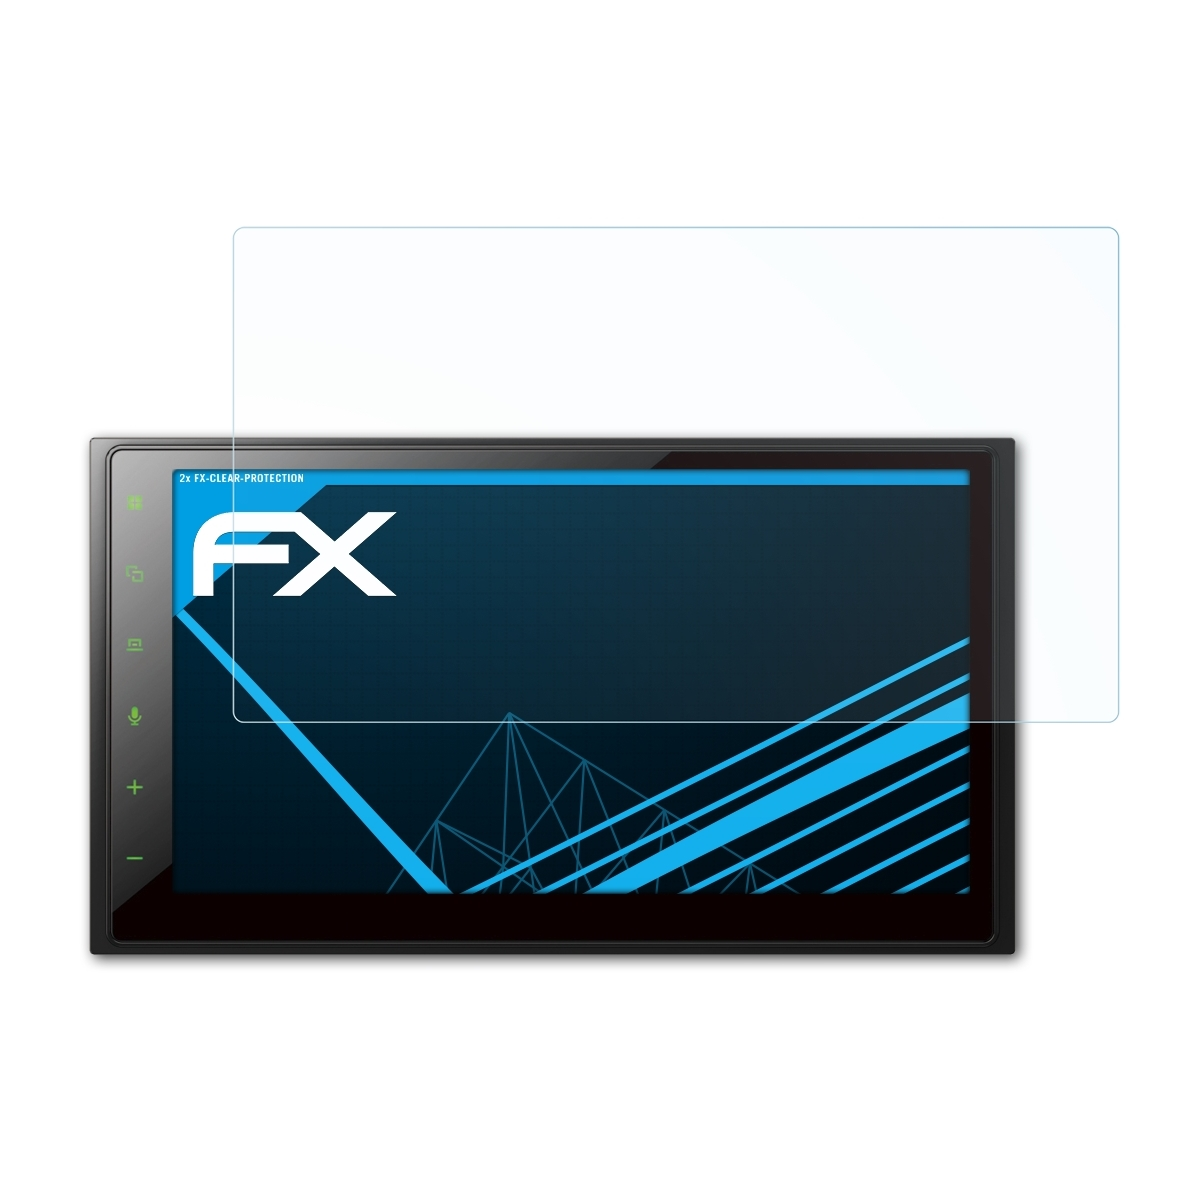 2x SPH-DA250DAB) FX-Clear Displayschutz(für Pioneer ATFOLIX